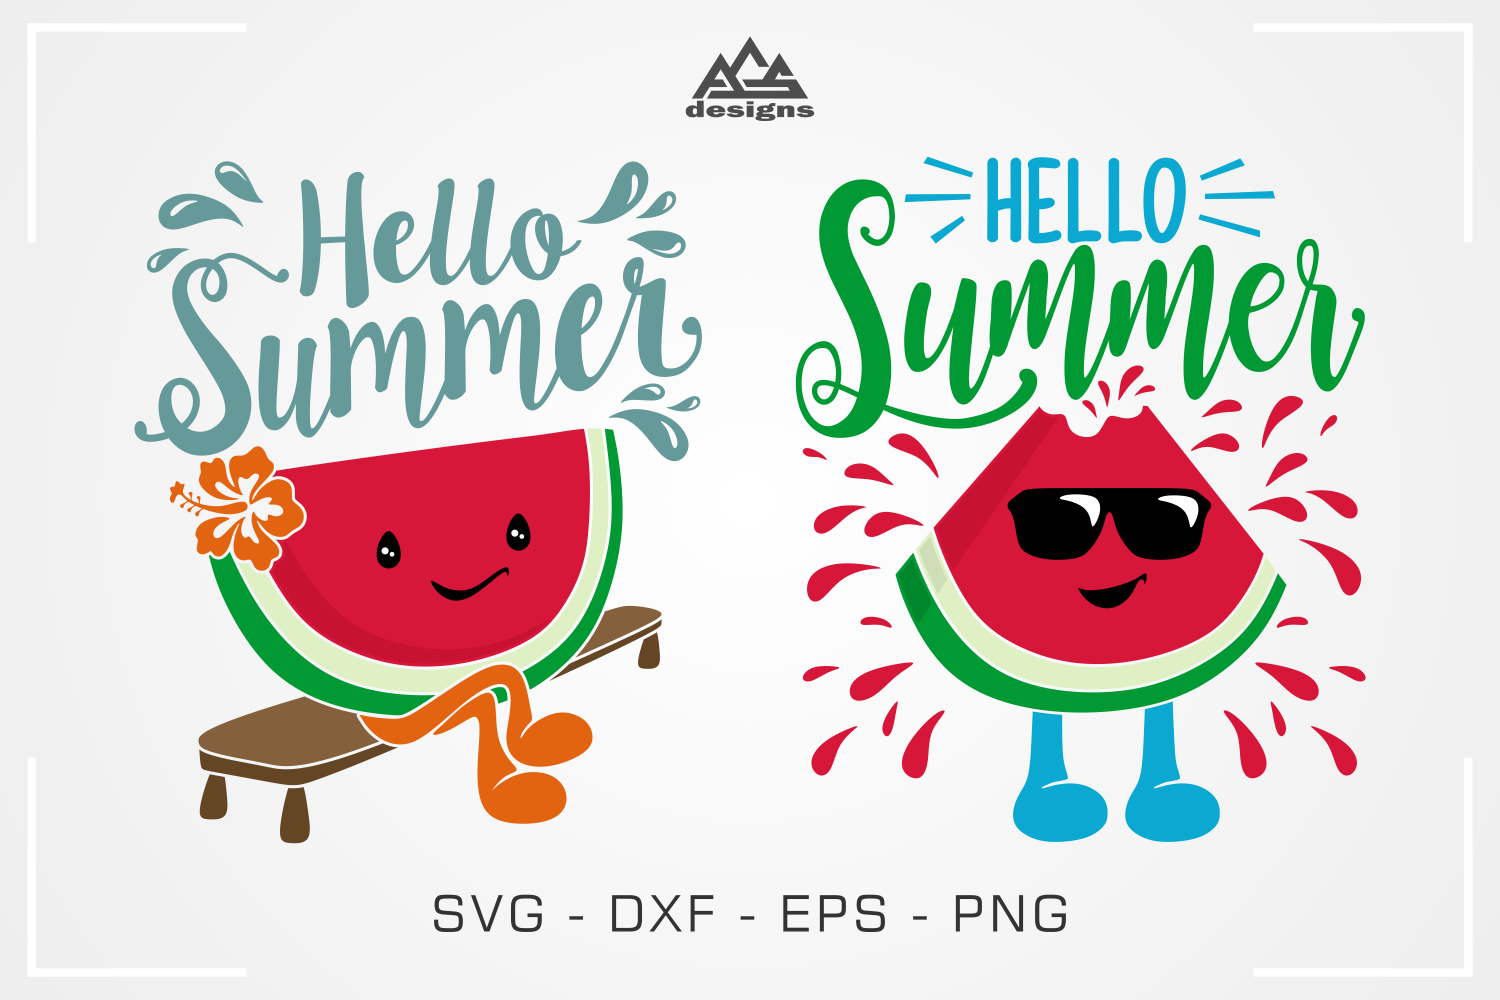 Download Hello Summer Watermelon Svg Design By AgsDesign ...